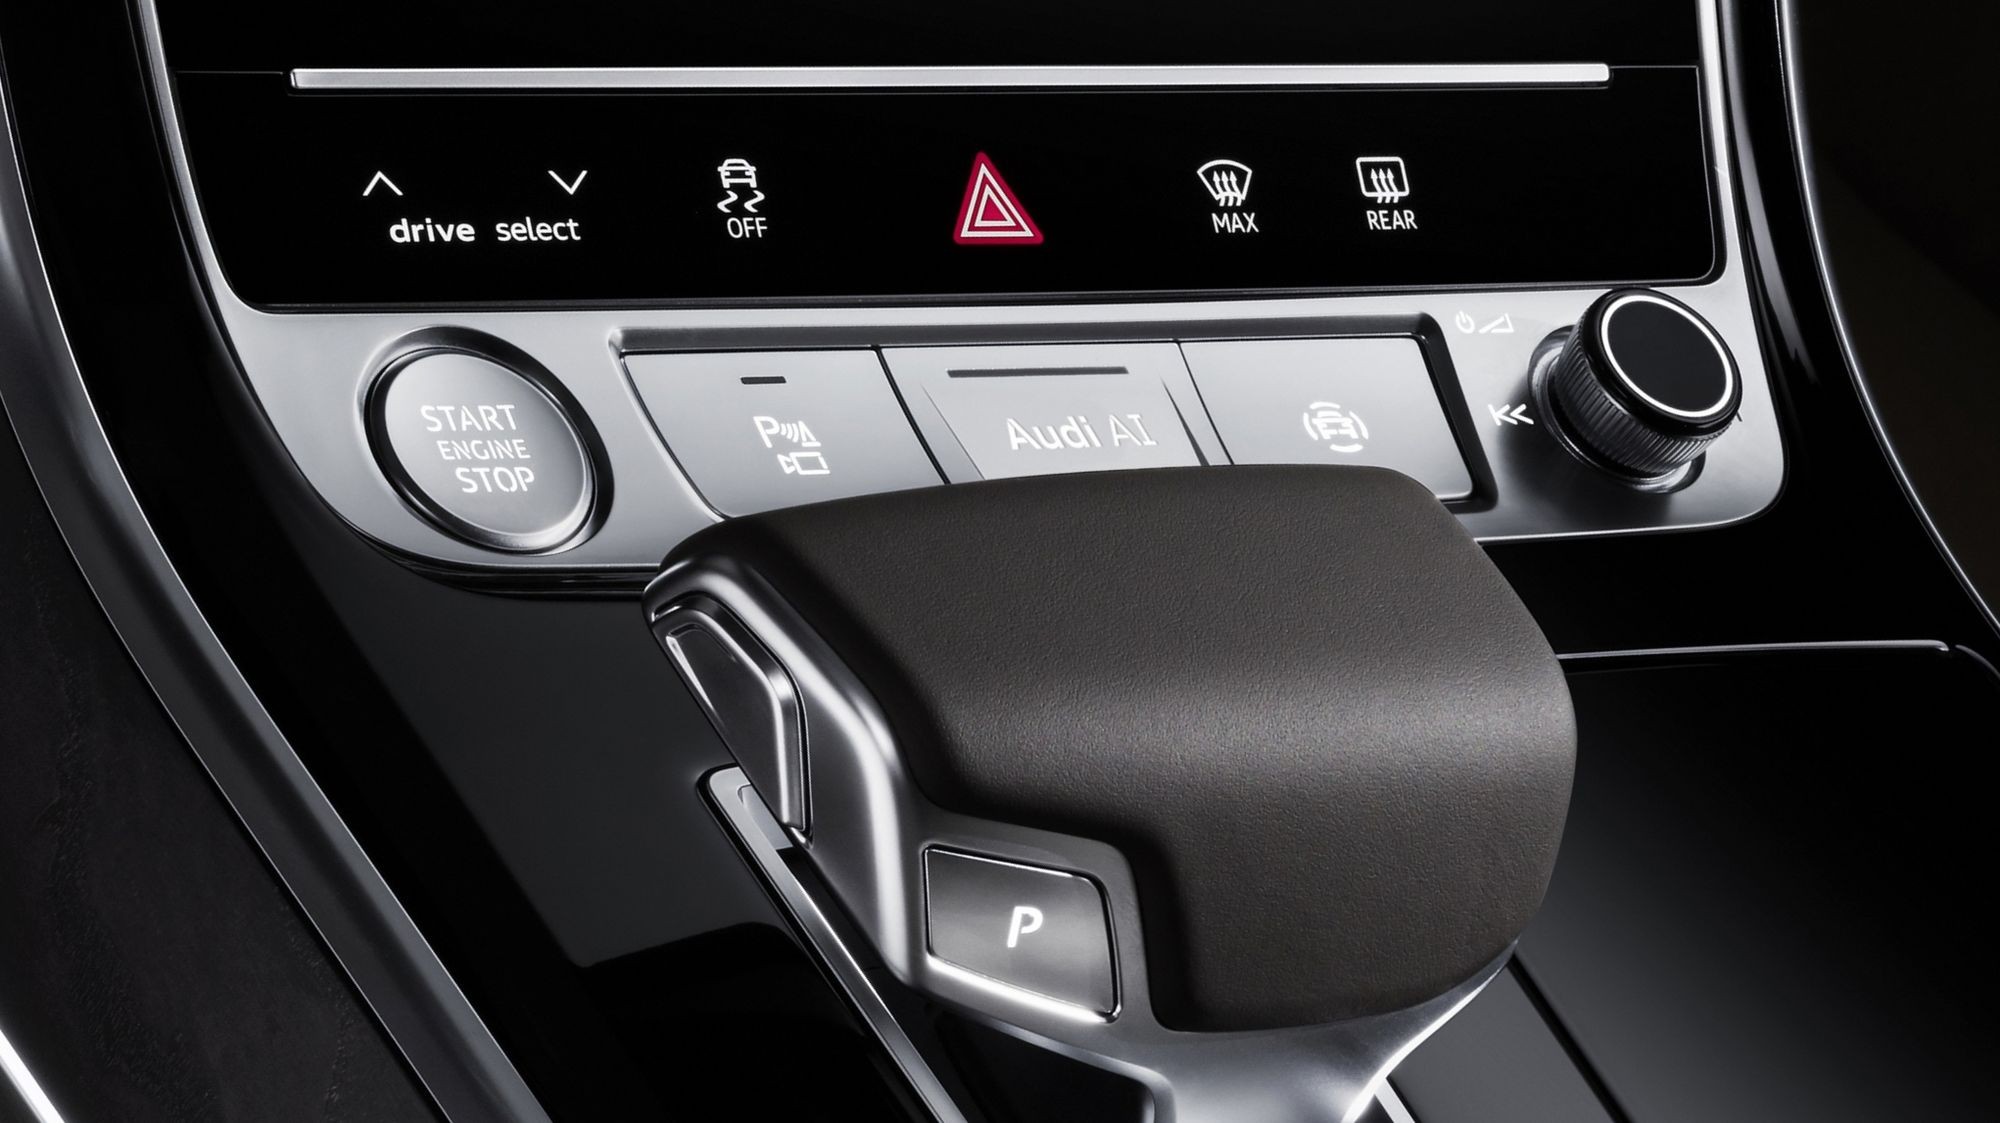 Автопилота не будет: Audi признала, что напичкала A8 бесполезным «железом»